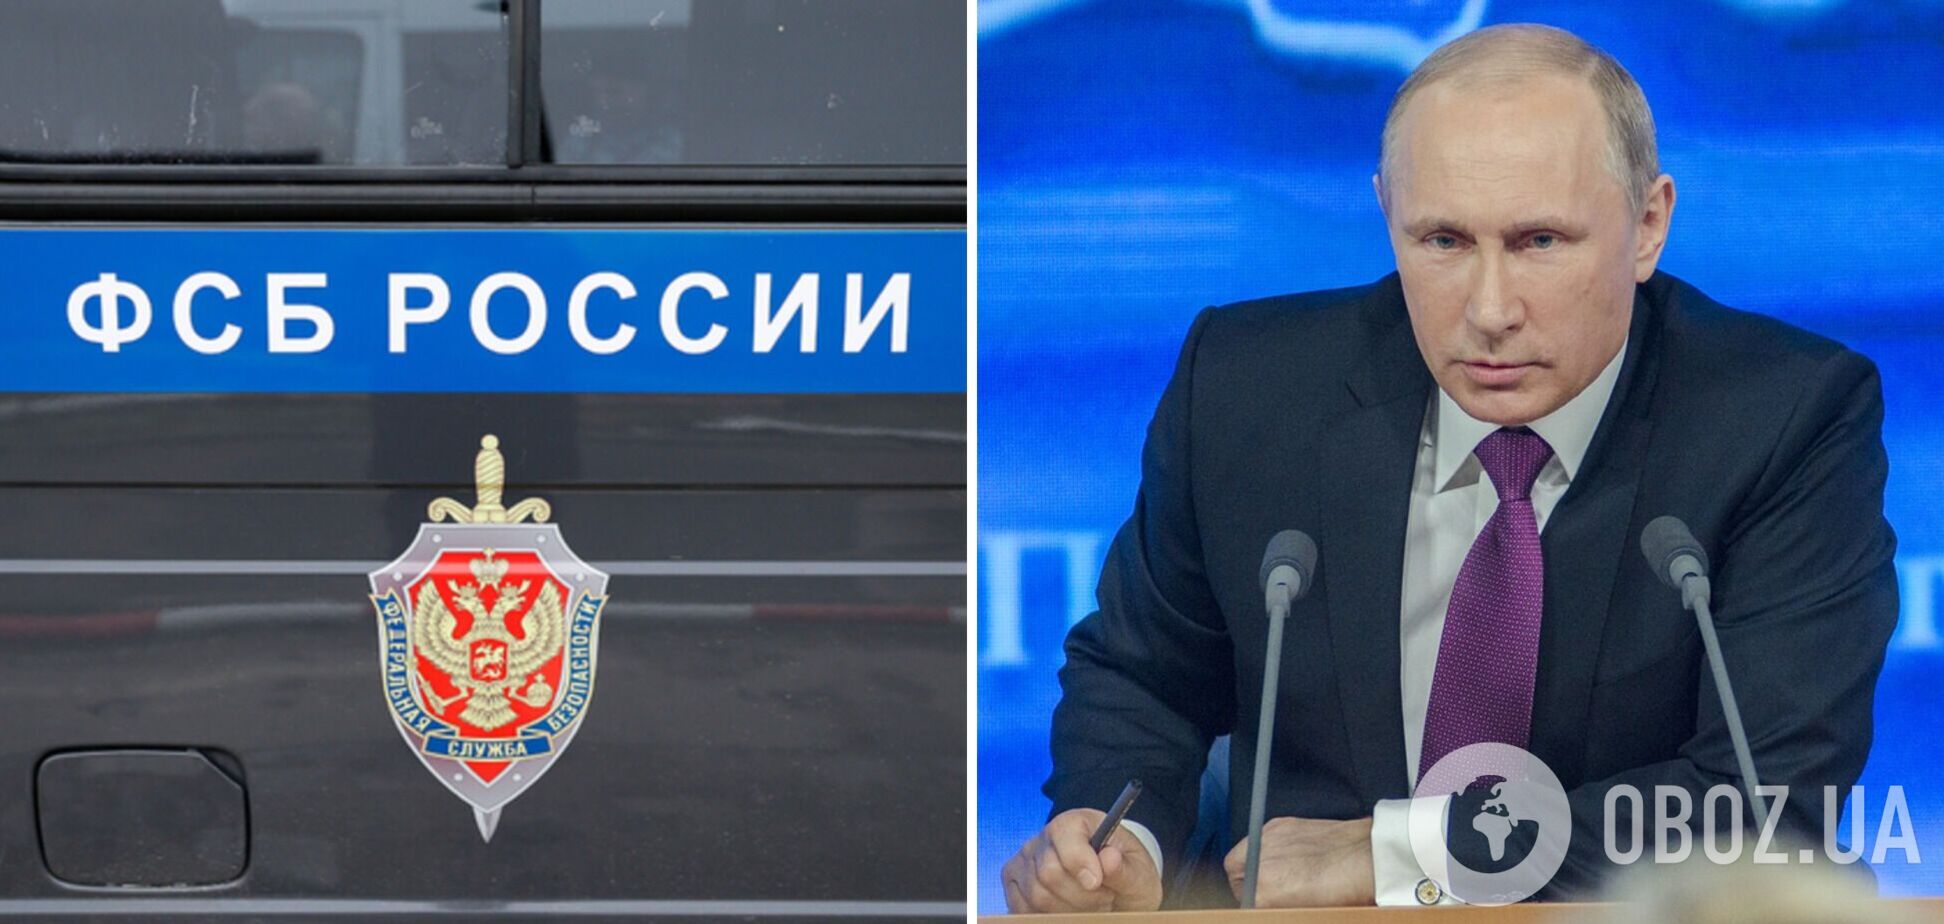 Путин начал преследовать сотрудников ФСБ из-за неправдивых разведданных о ситуации в Украине